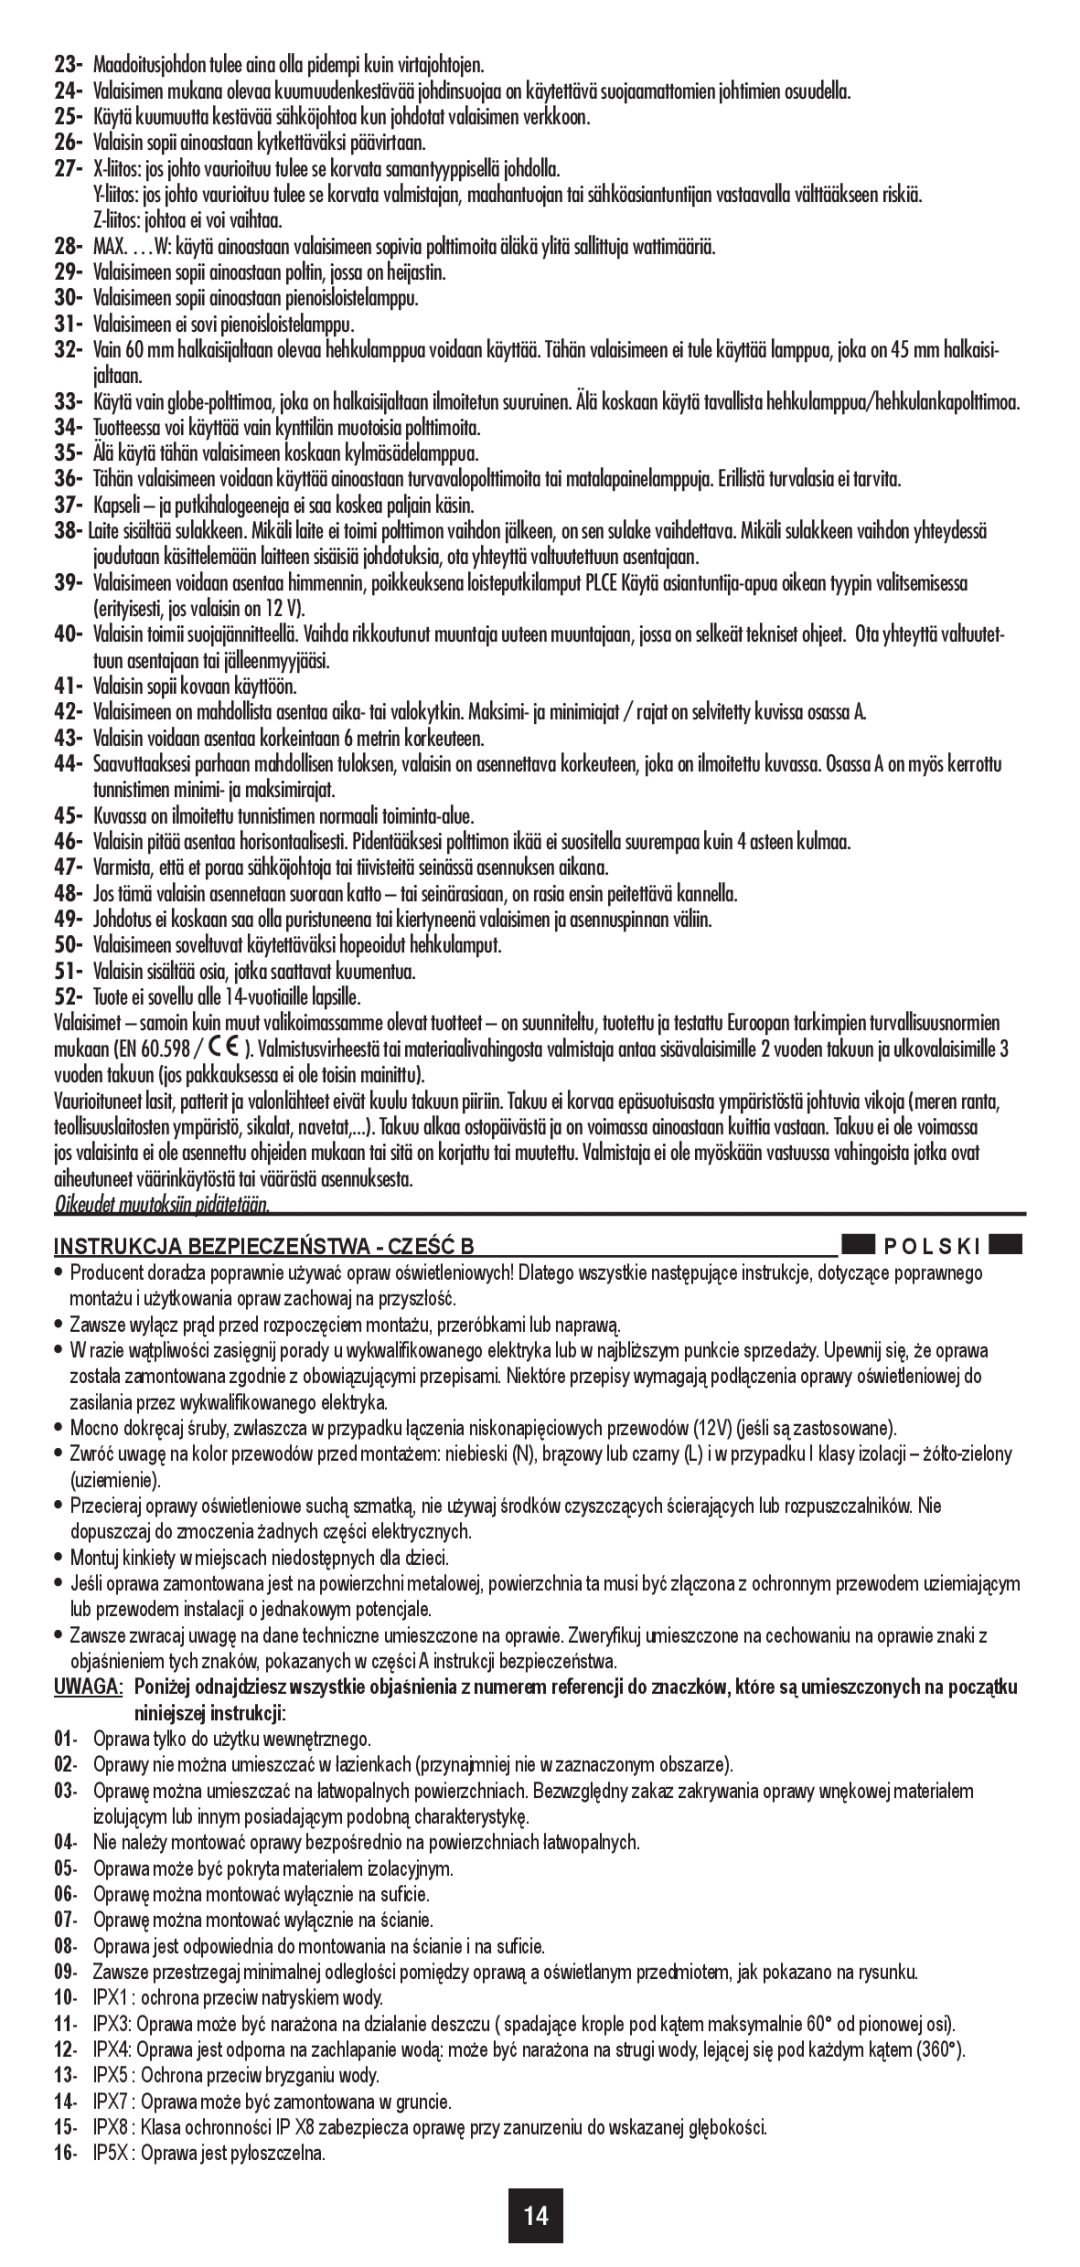 Philips 44992/**/16 user manual Oikeudet muutoksiin pidätetään, Instrukcja Bezpieczeństwa - Cześć B 